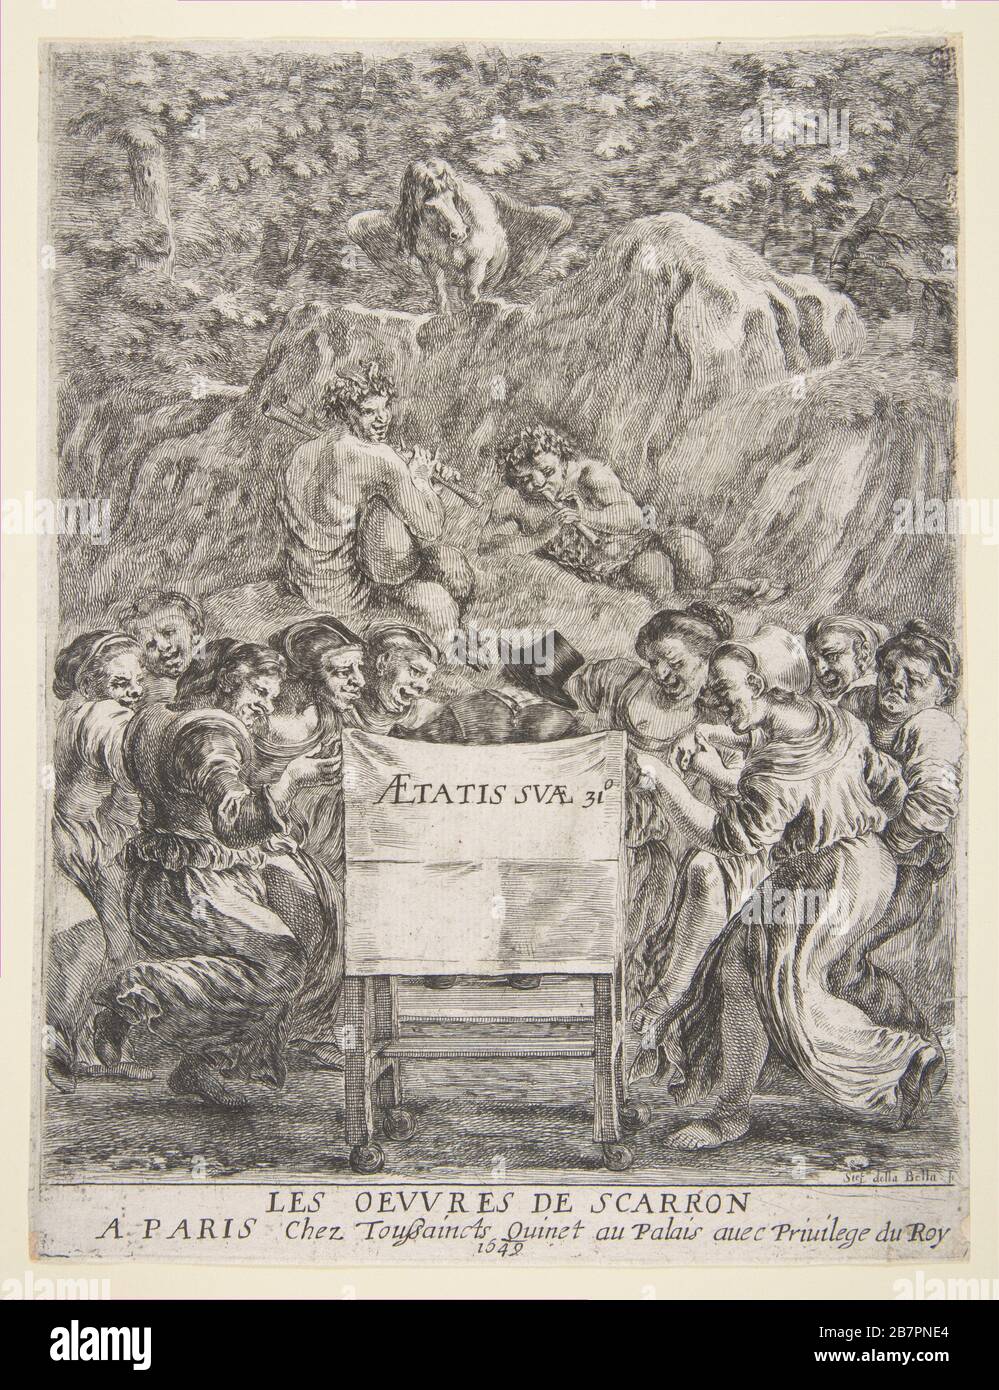 Frontespizio per Les oeuvres de Scarron, 1649. Foto Stock